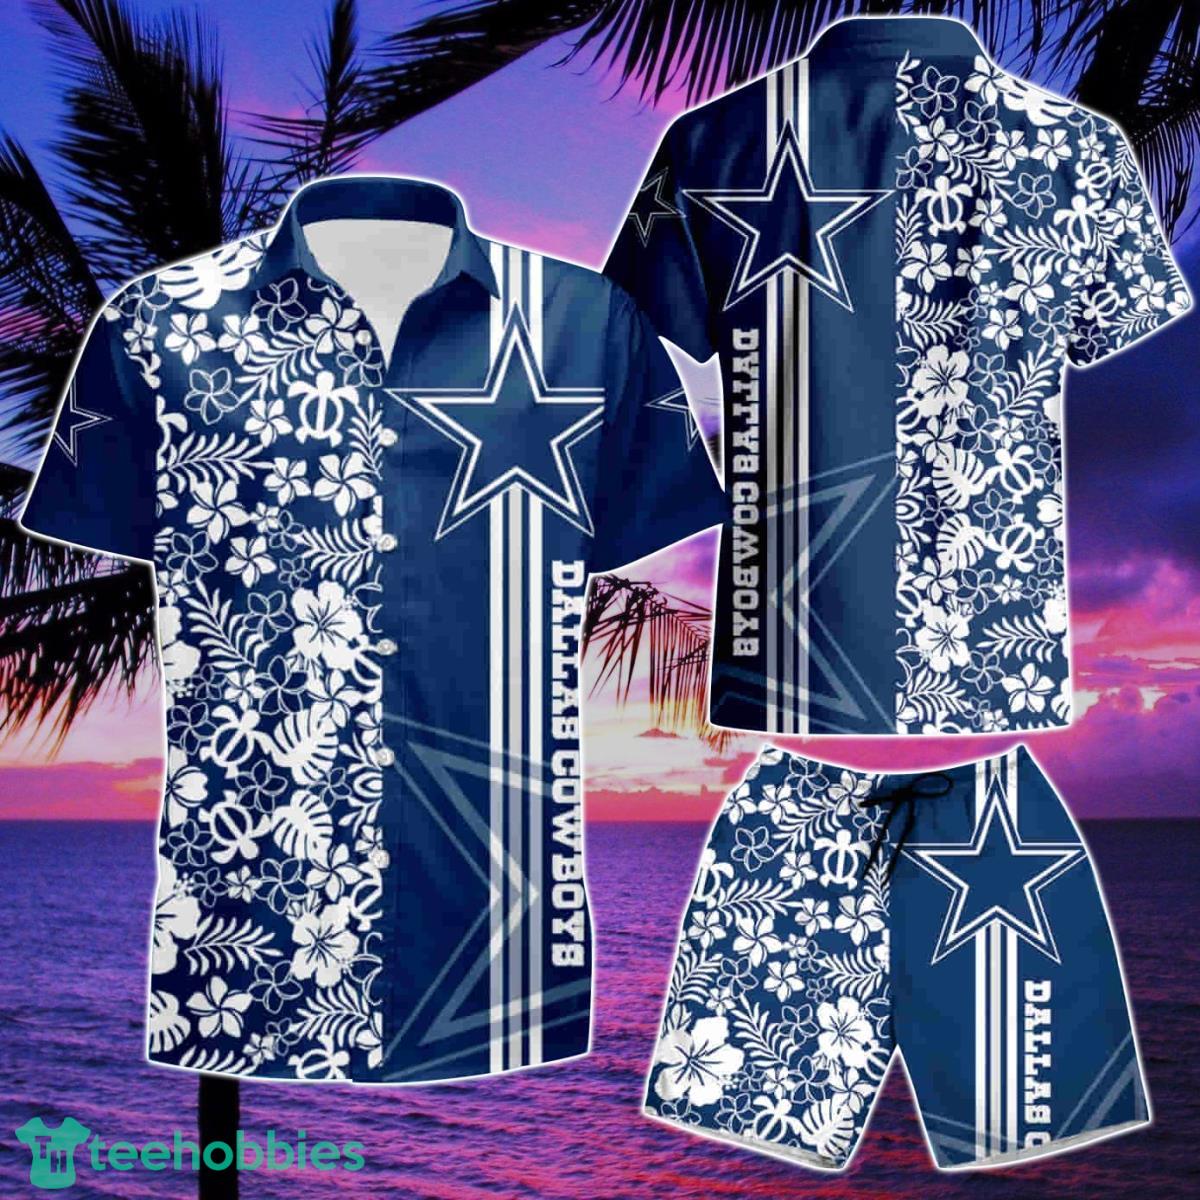 Cowboys Limited Edition Hawaiian Shirt 2021 - Dallas Cowboys Home